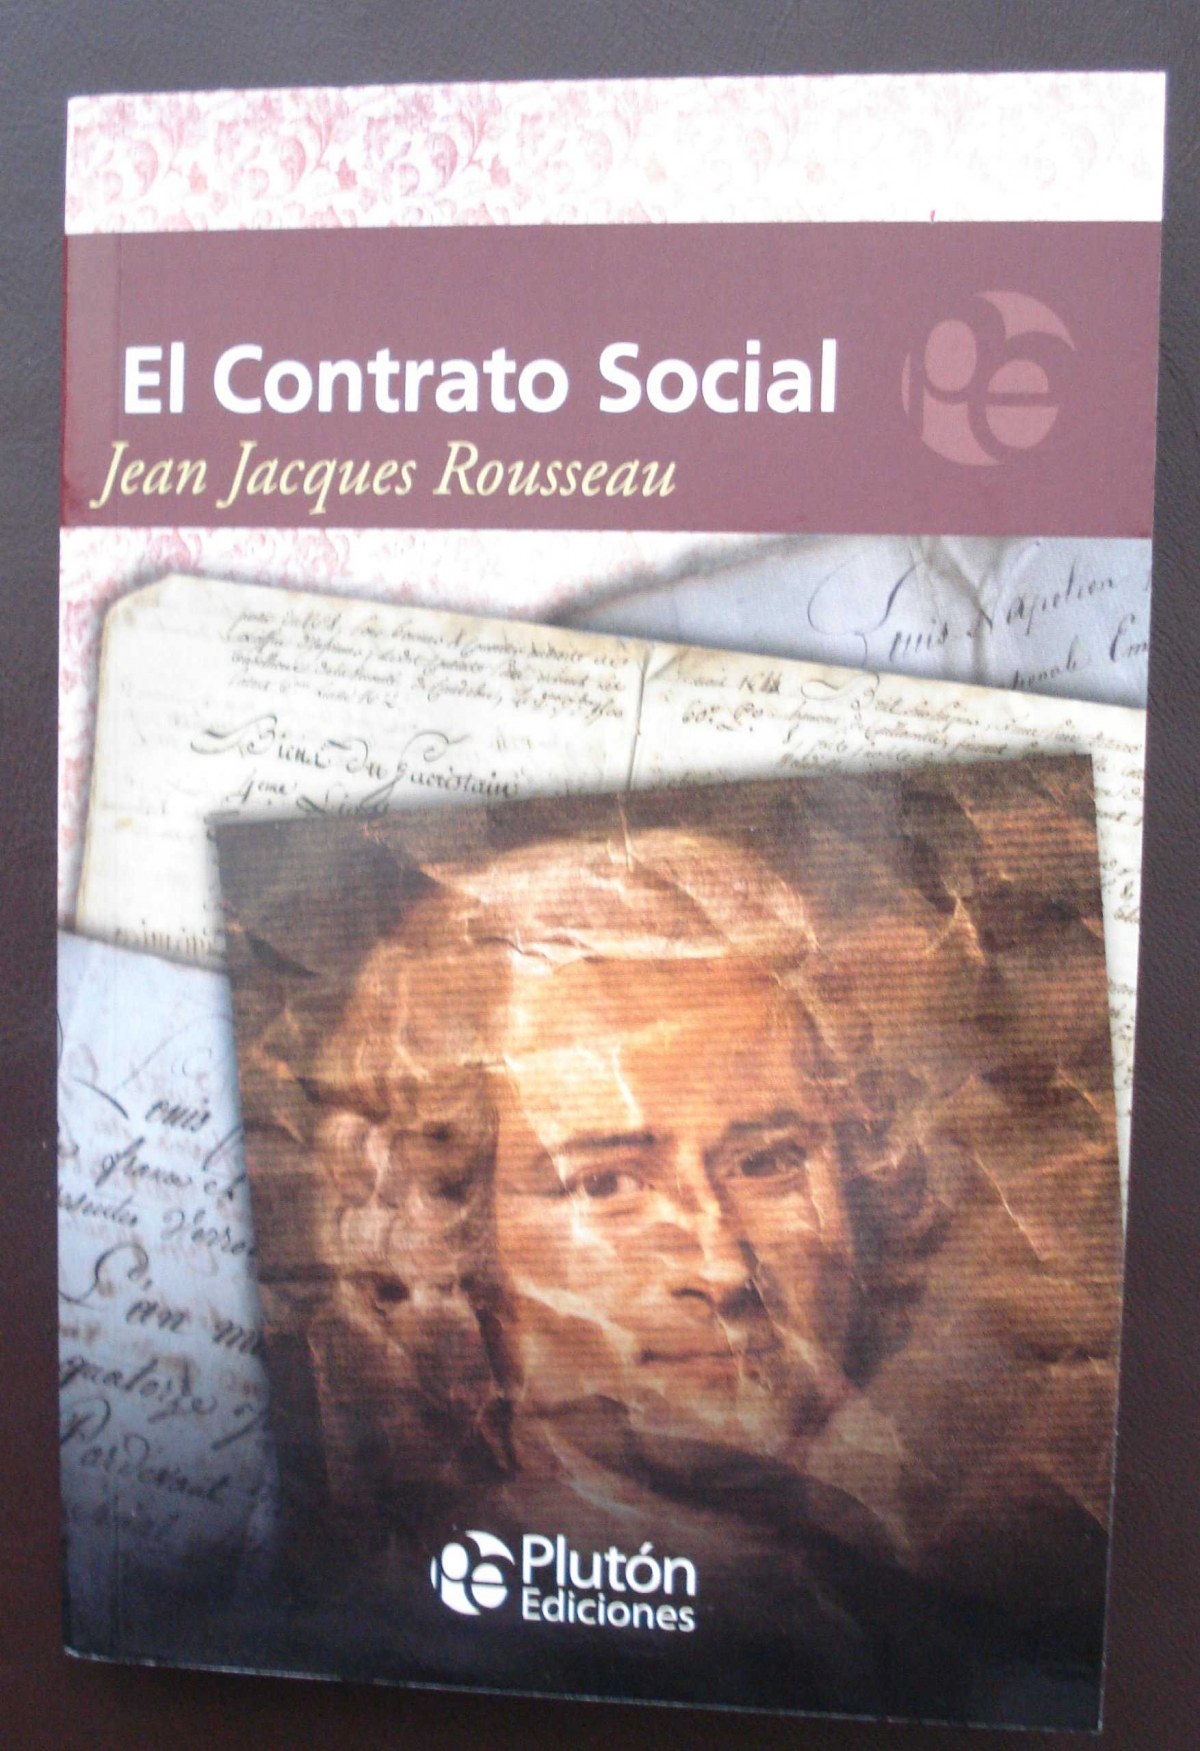 El contrato social - Rousseau, Jean Jacques